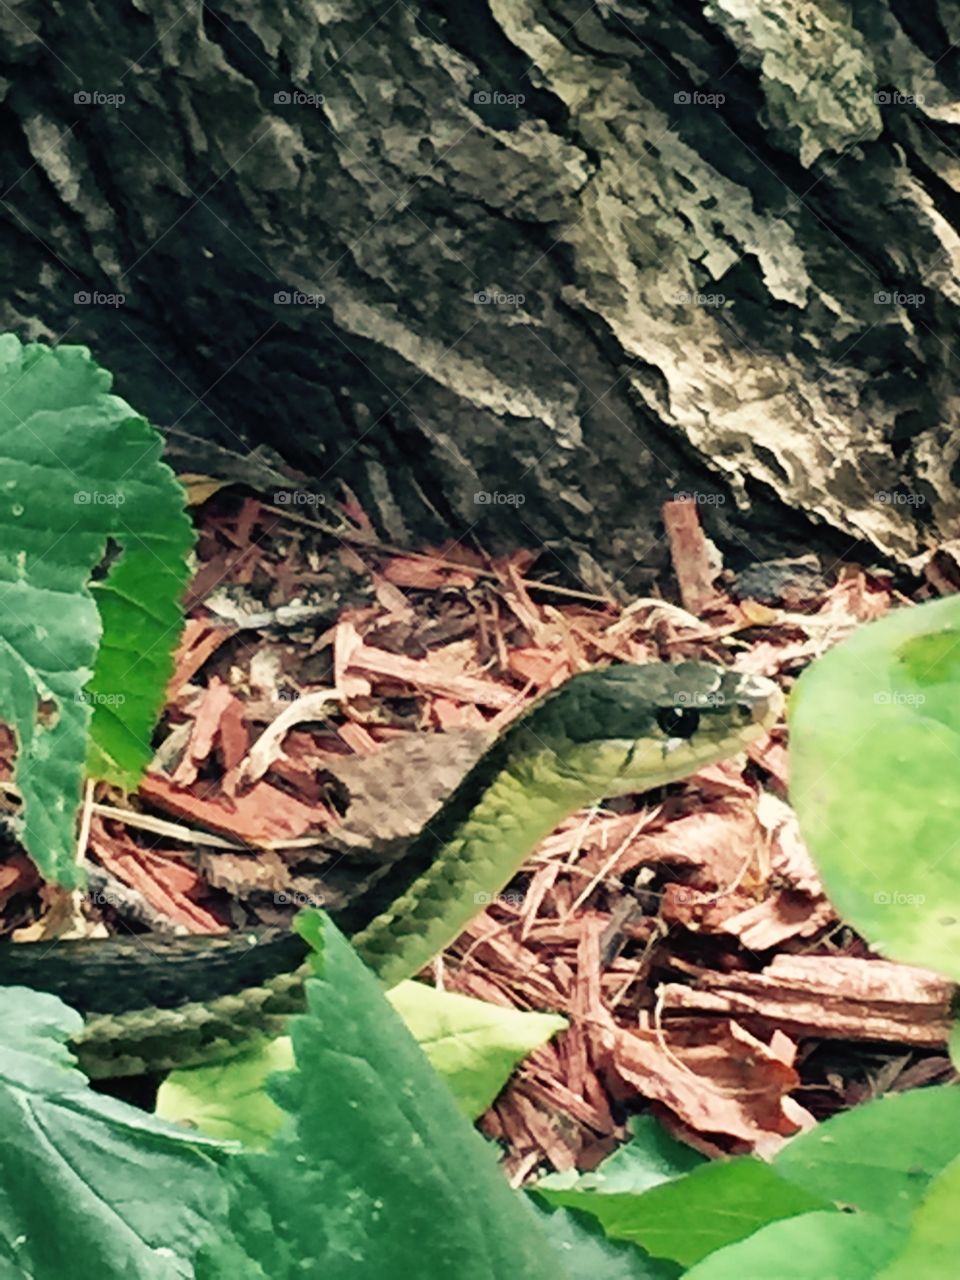 Slithery snake . Snake in the garden